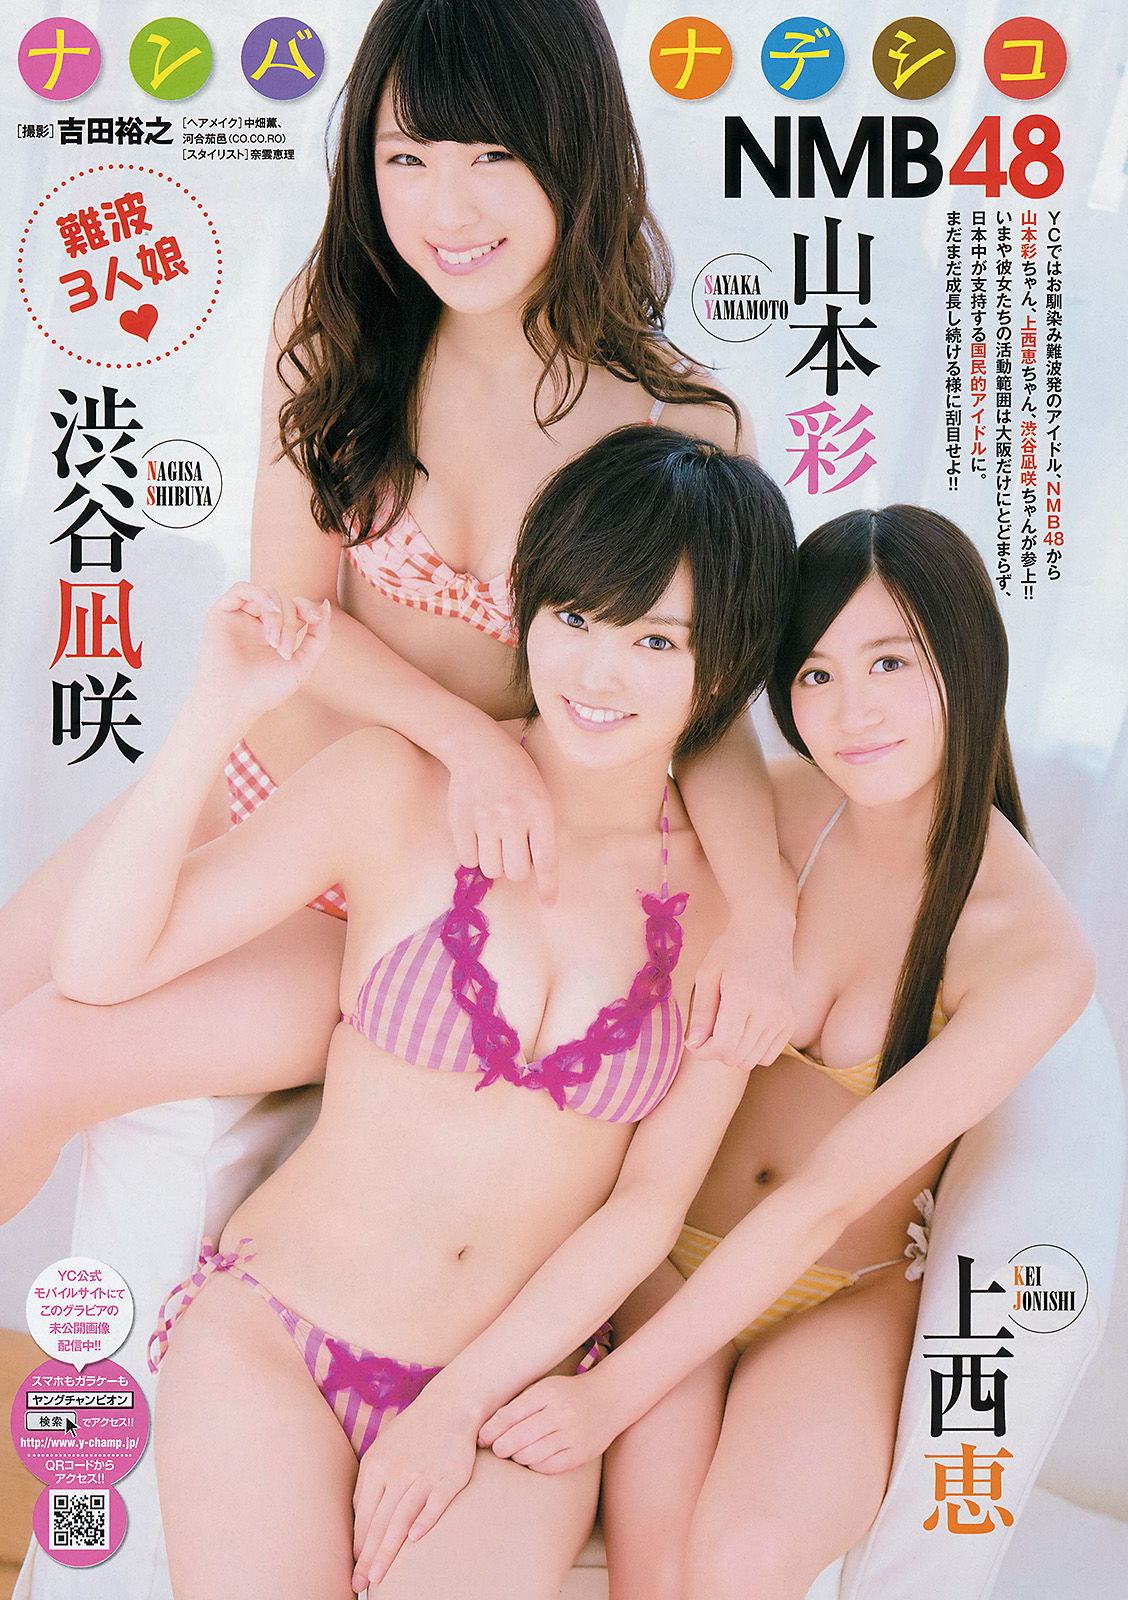 [Young Champion]杂志:NMB48高品质私房写真在线浏览(14P)